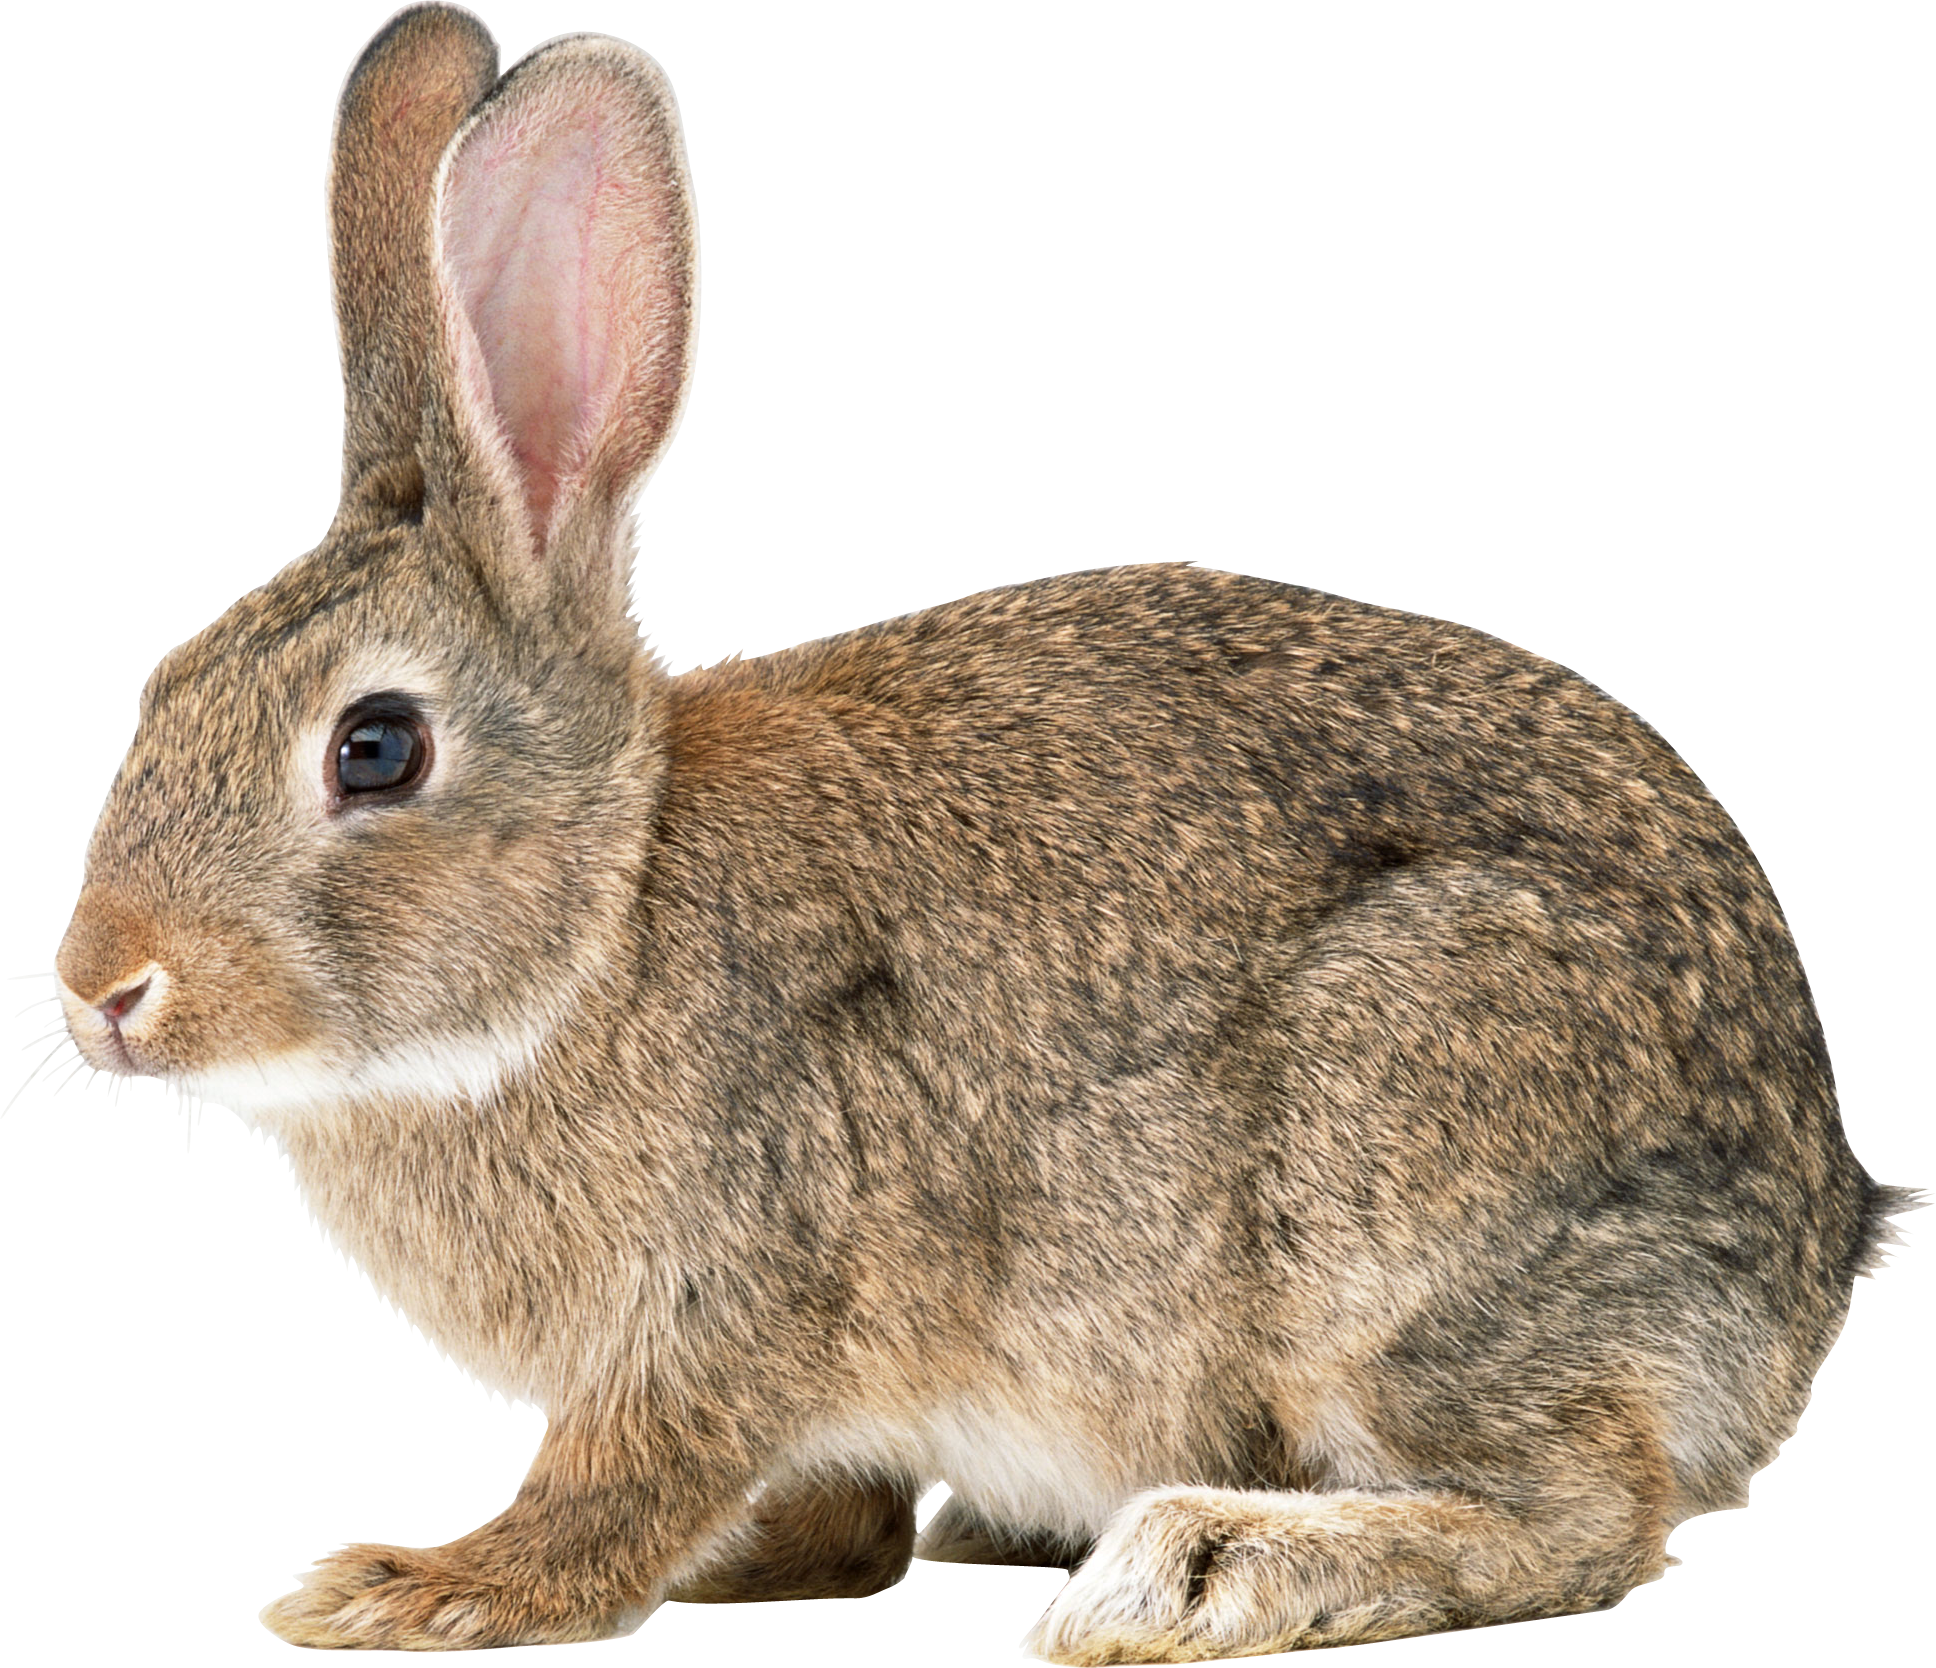 Rabbit Description